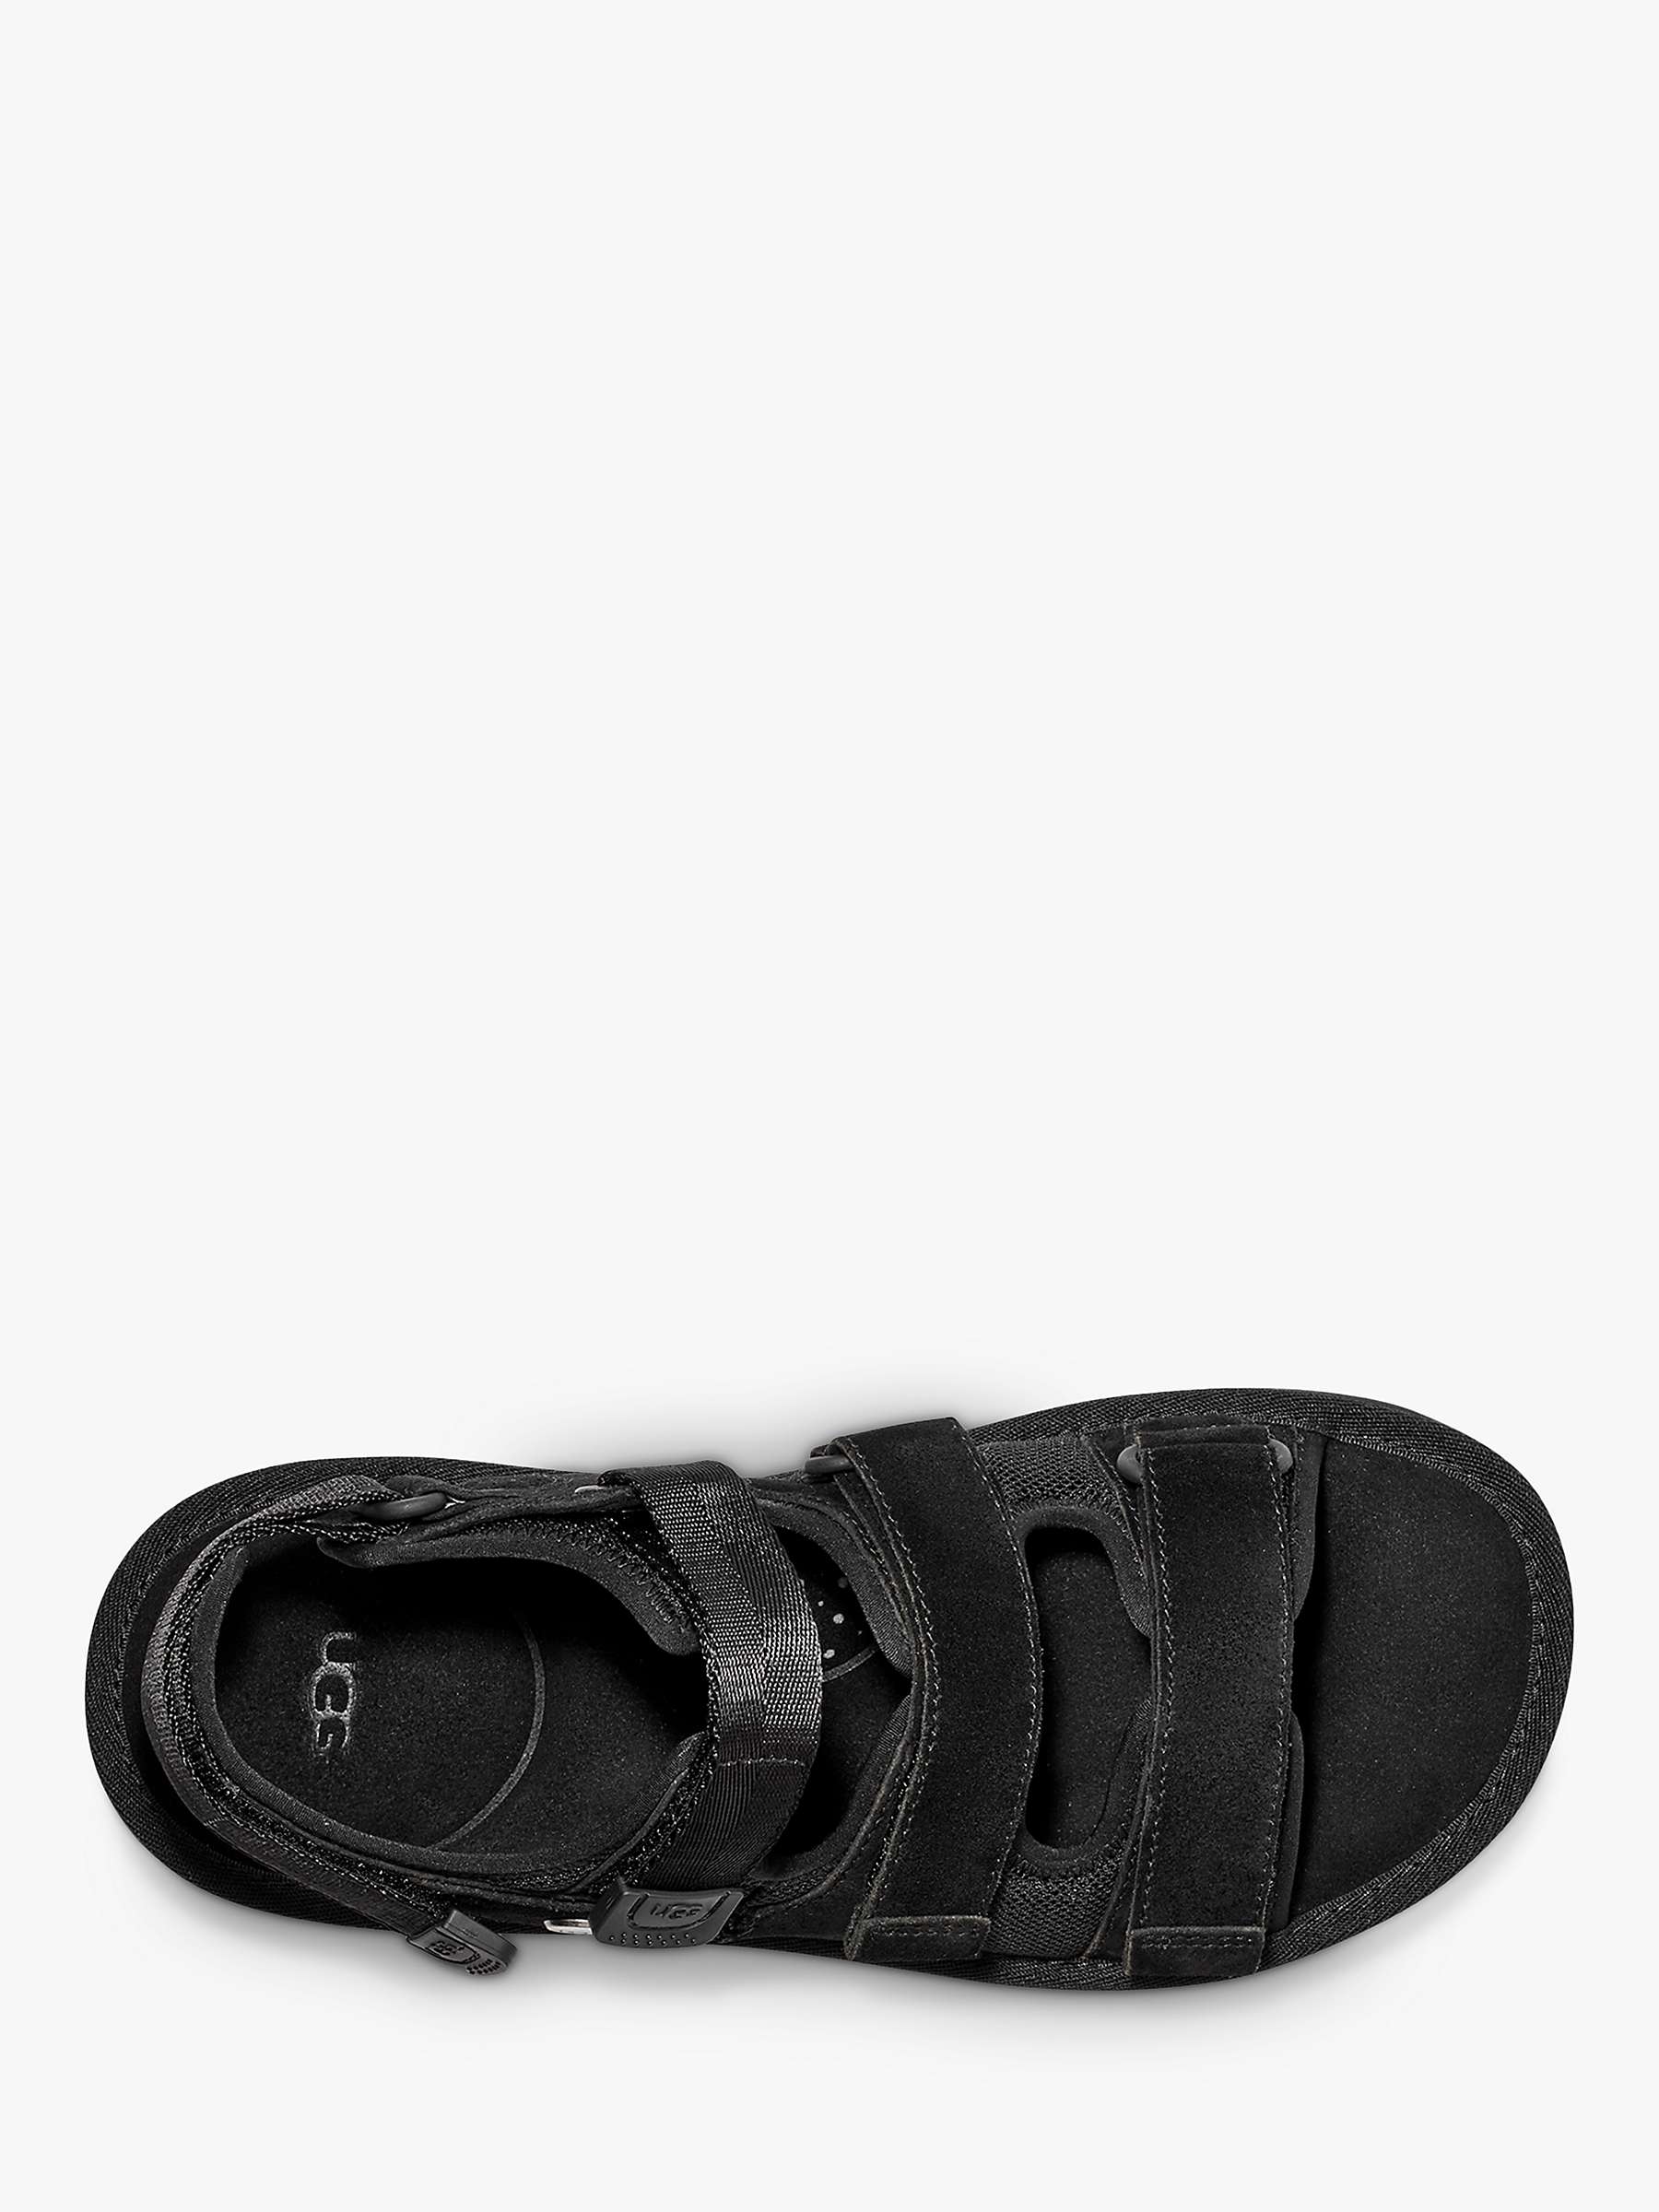 Buy UGG Goldencoast Multistrap Sandals, Black Online at johnlewis.com